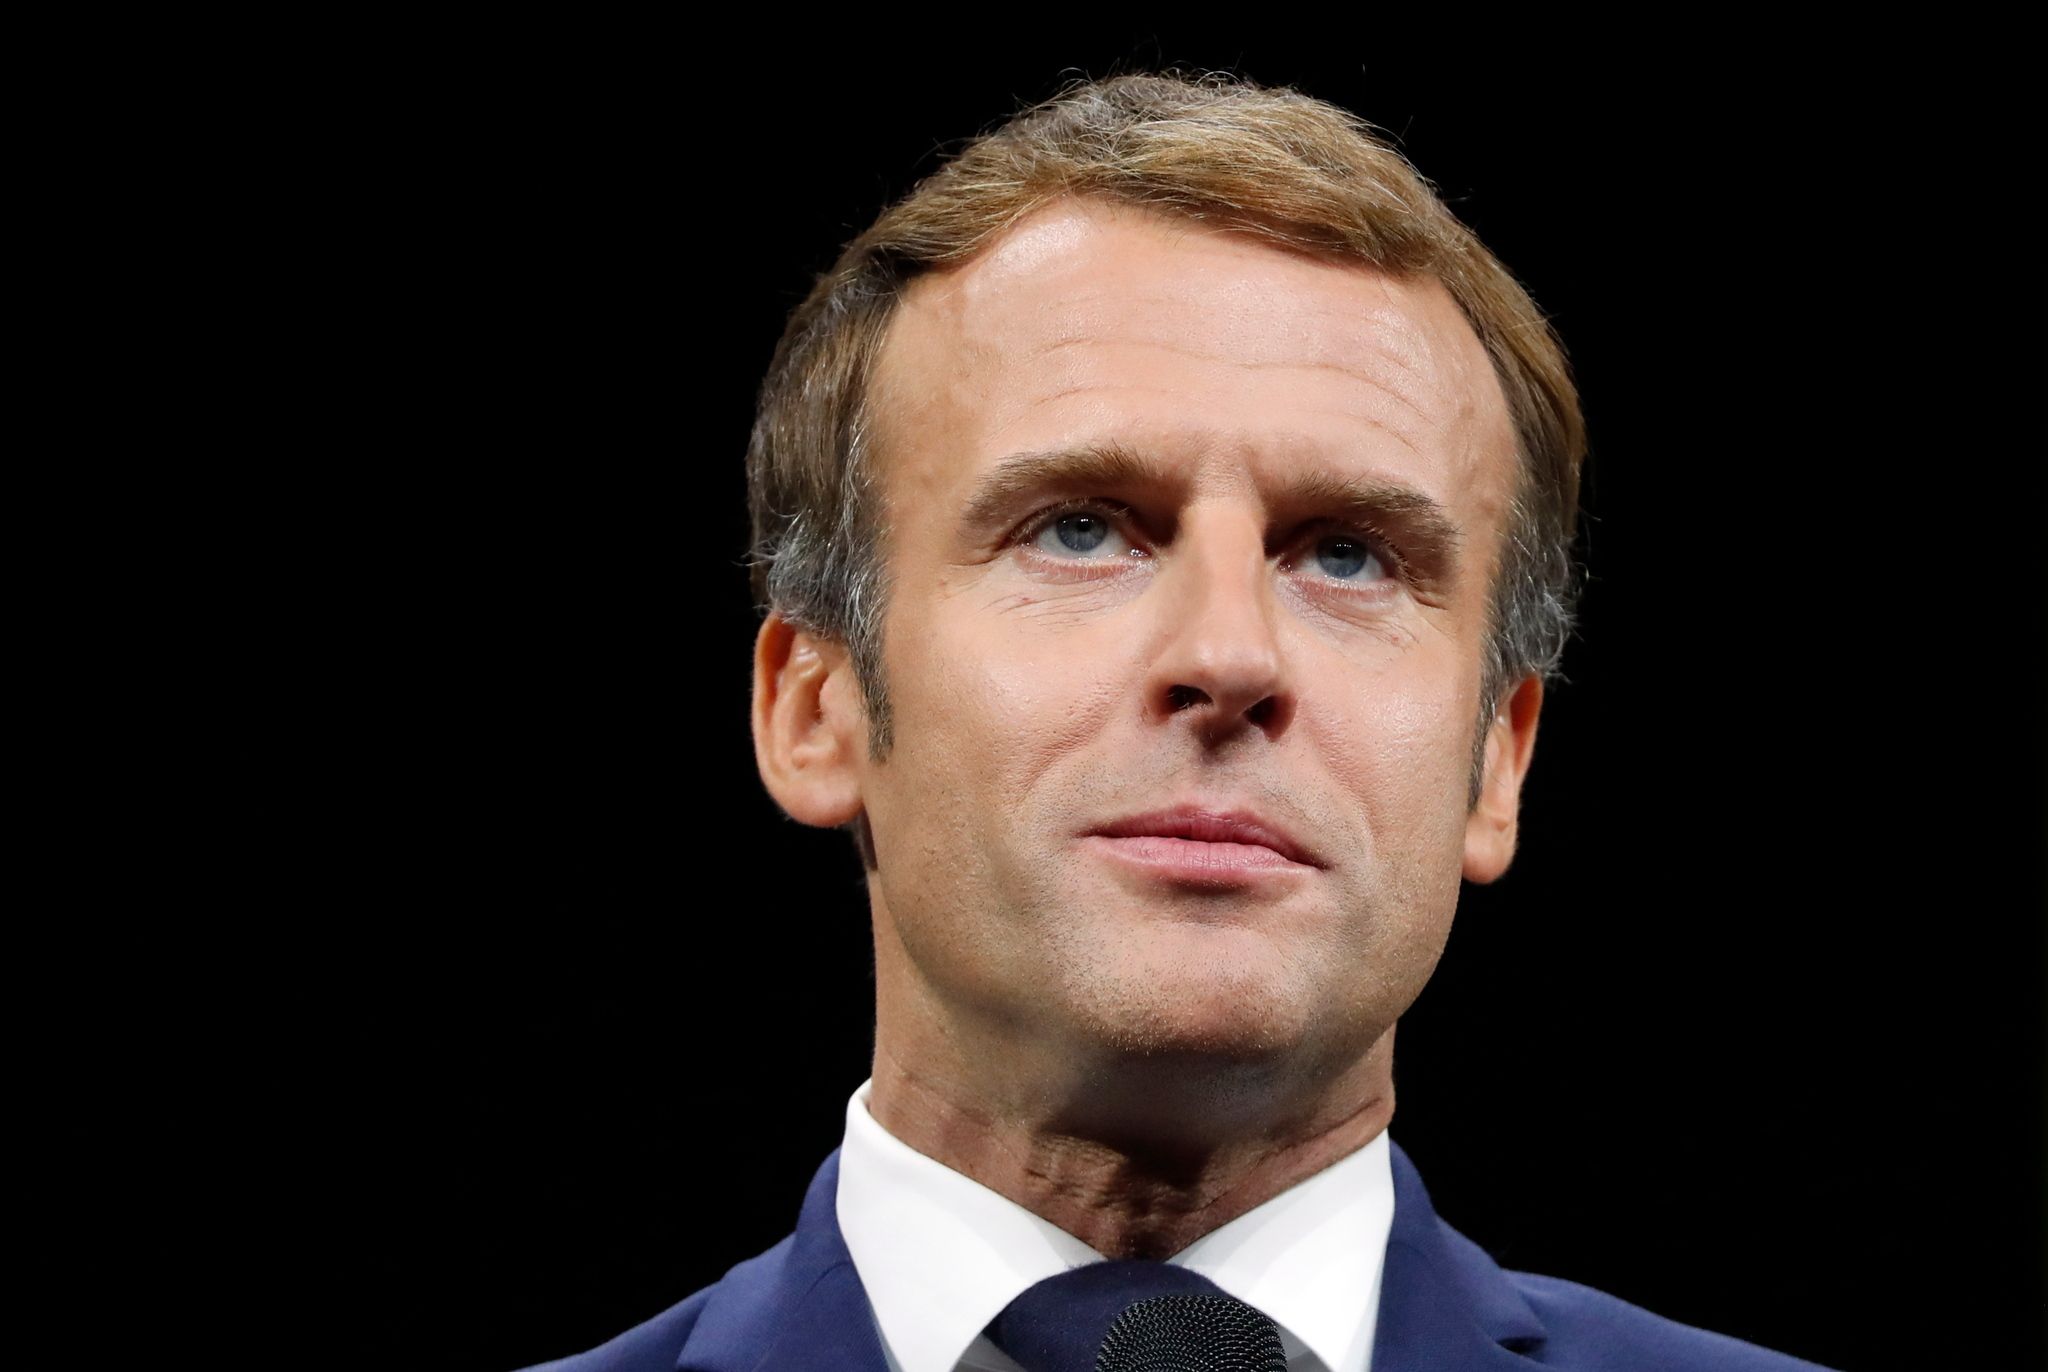 Emmanuel Macron agacé par une célèbre actrice : "Elle me fait chier"